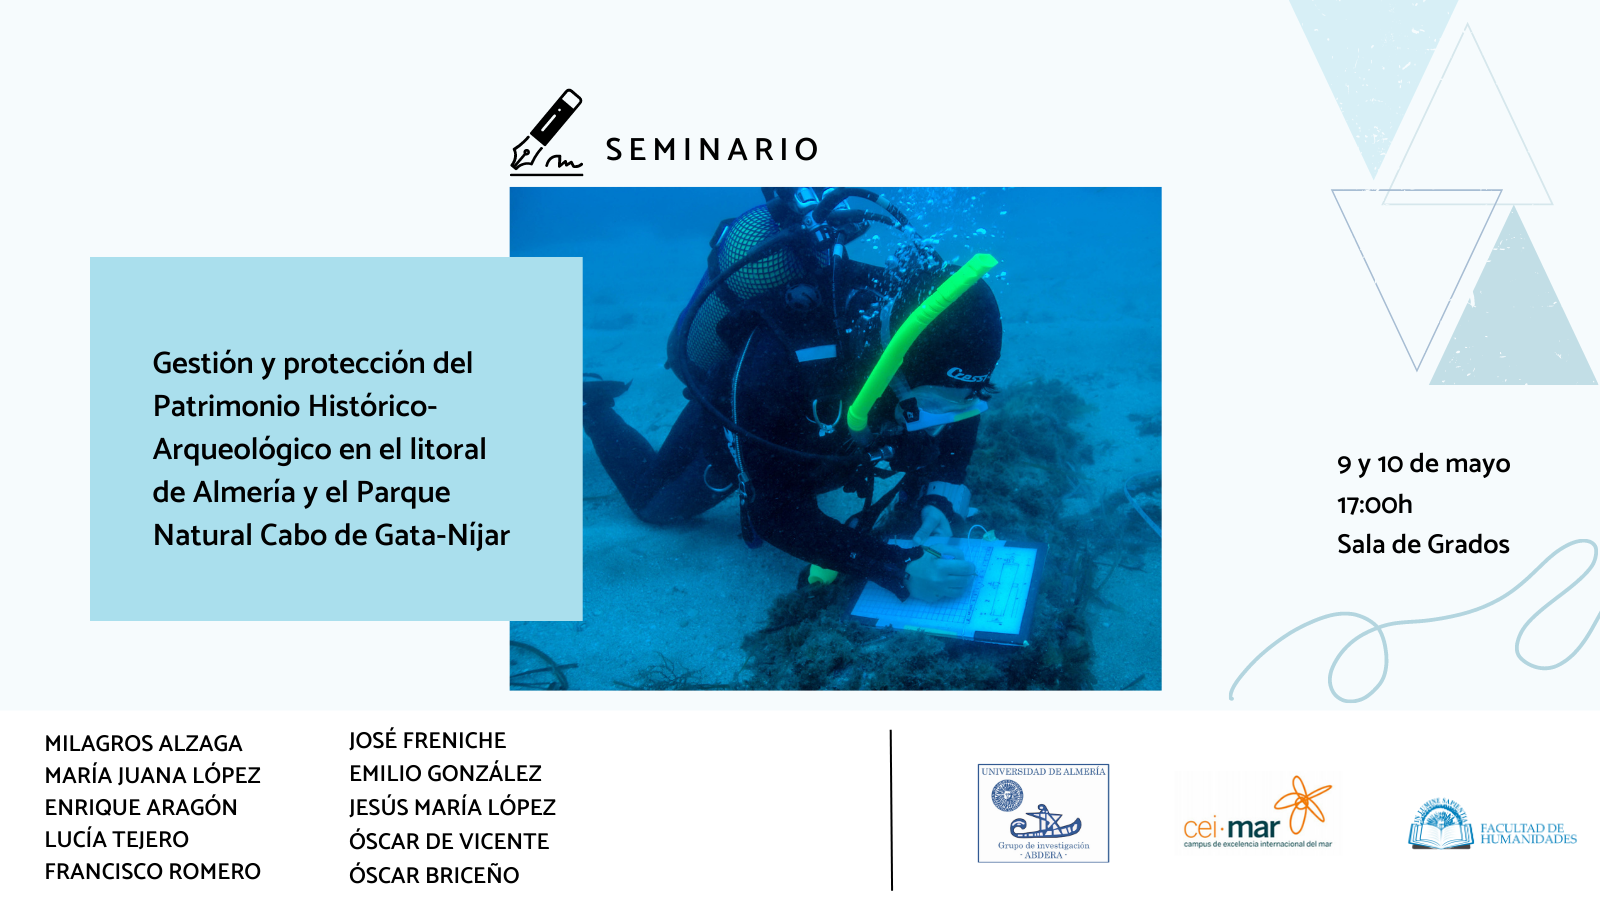 La Facultad de Humanidades y Enrique Aragón Núñez organizan el seminario «Gestión y protección del Patrimonio Histórico-Arqueológico en el litoral de Almería y el Parque Natural Cabo de Gata-Níjar».